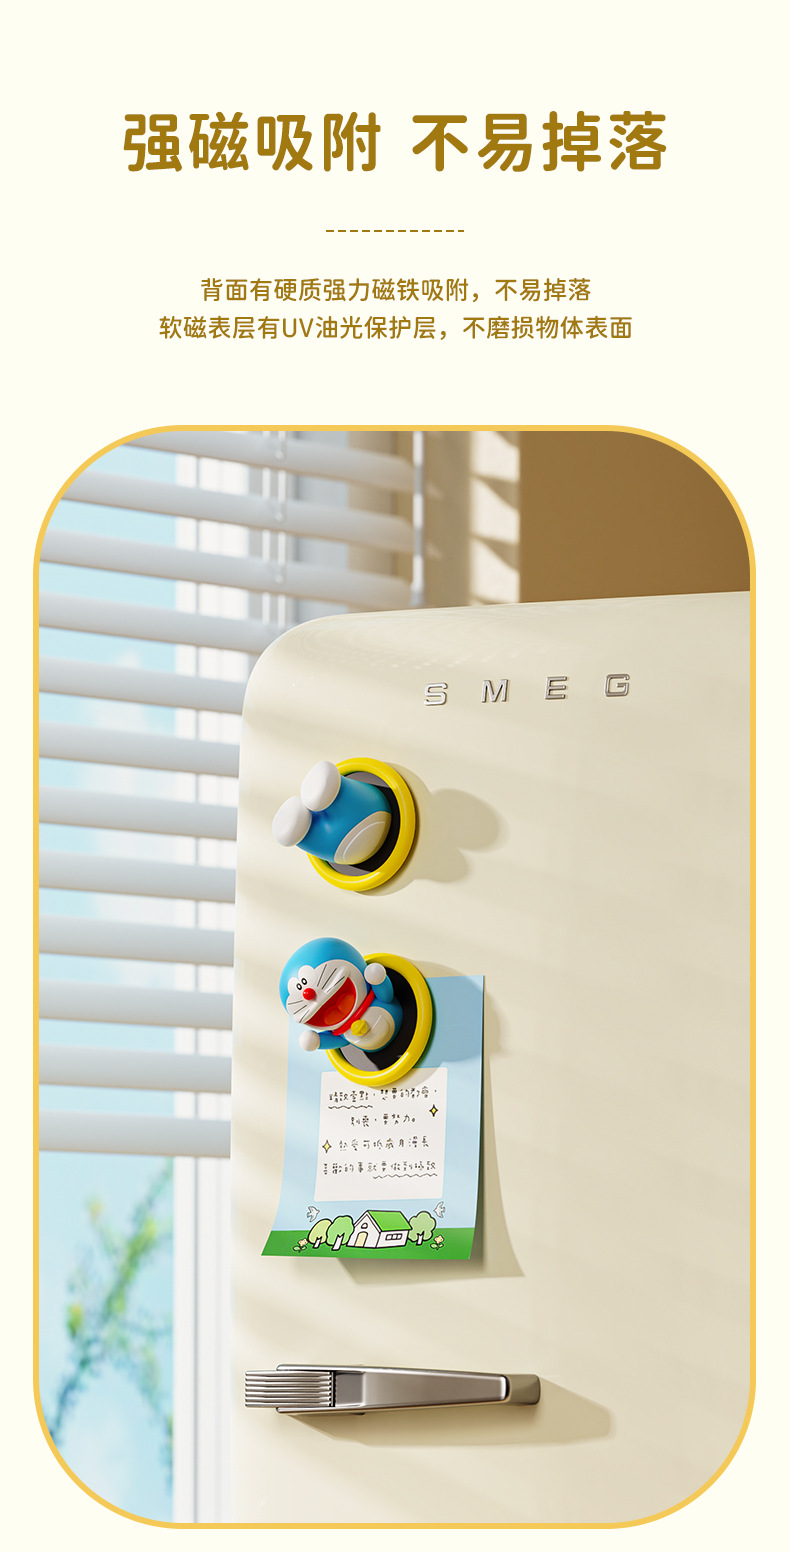 "哆啦A夢創意軟磁3D卡通冰箱磁吸貼